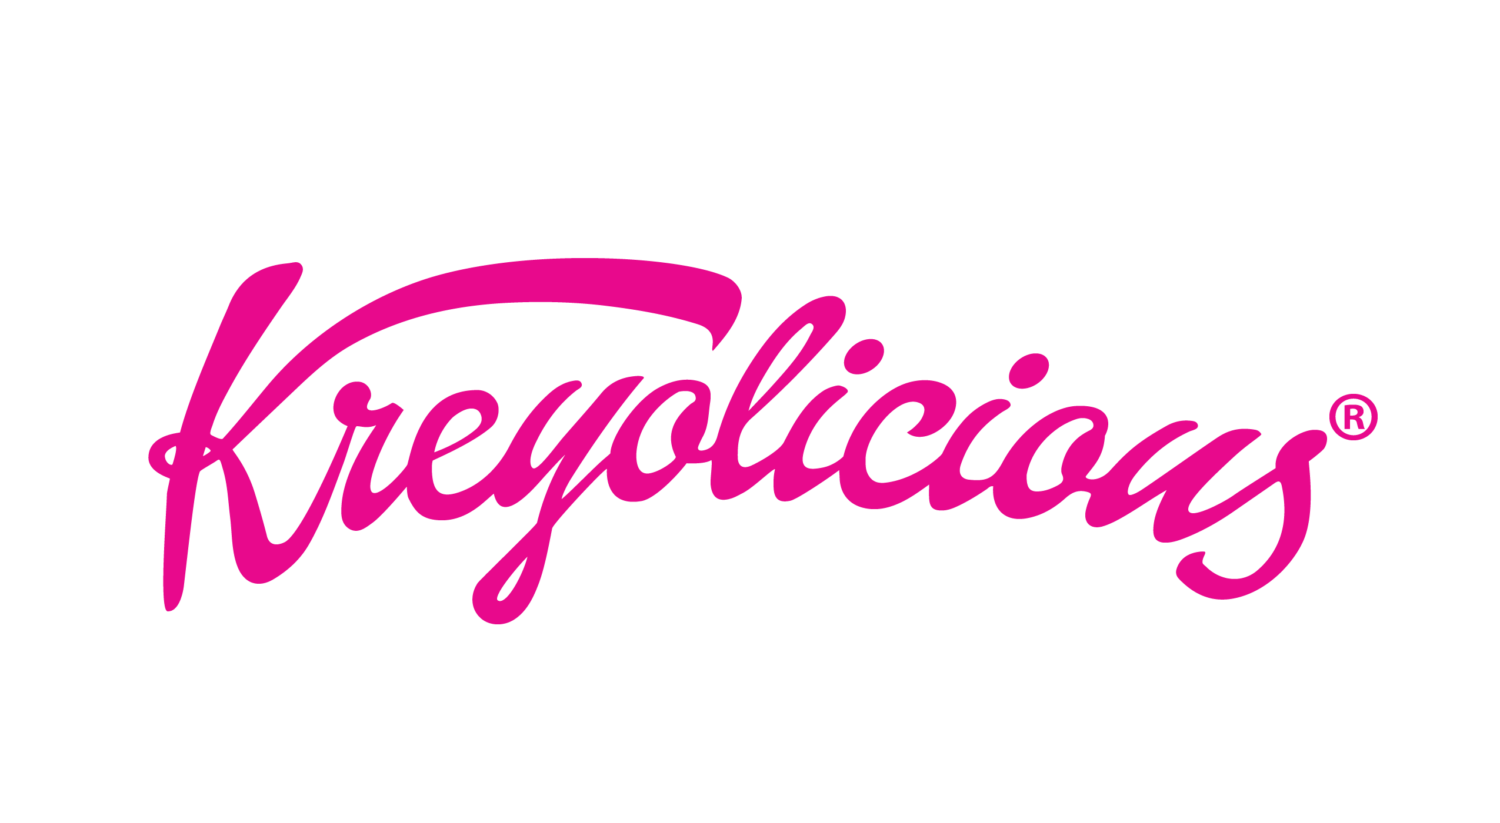 Kreyolicious Logo